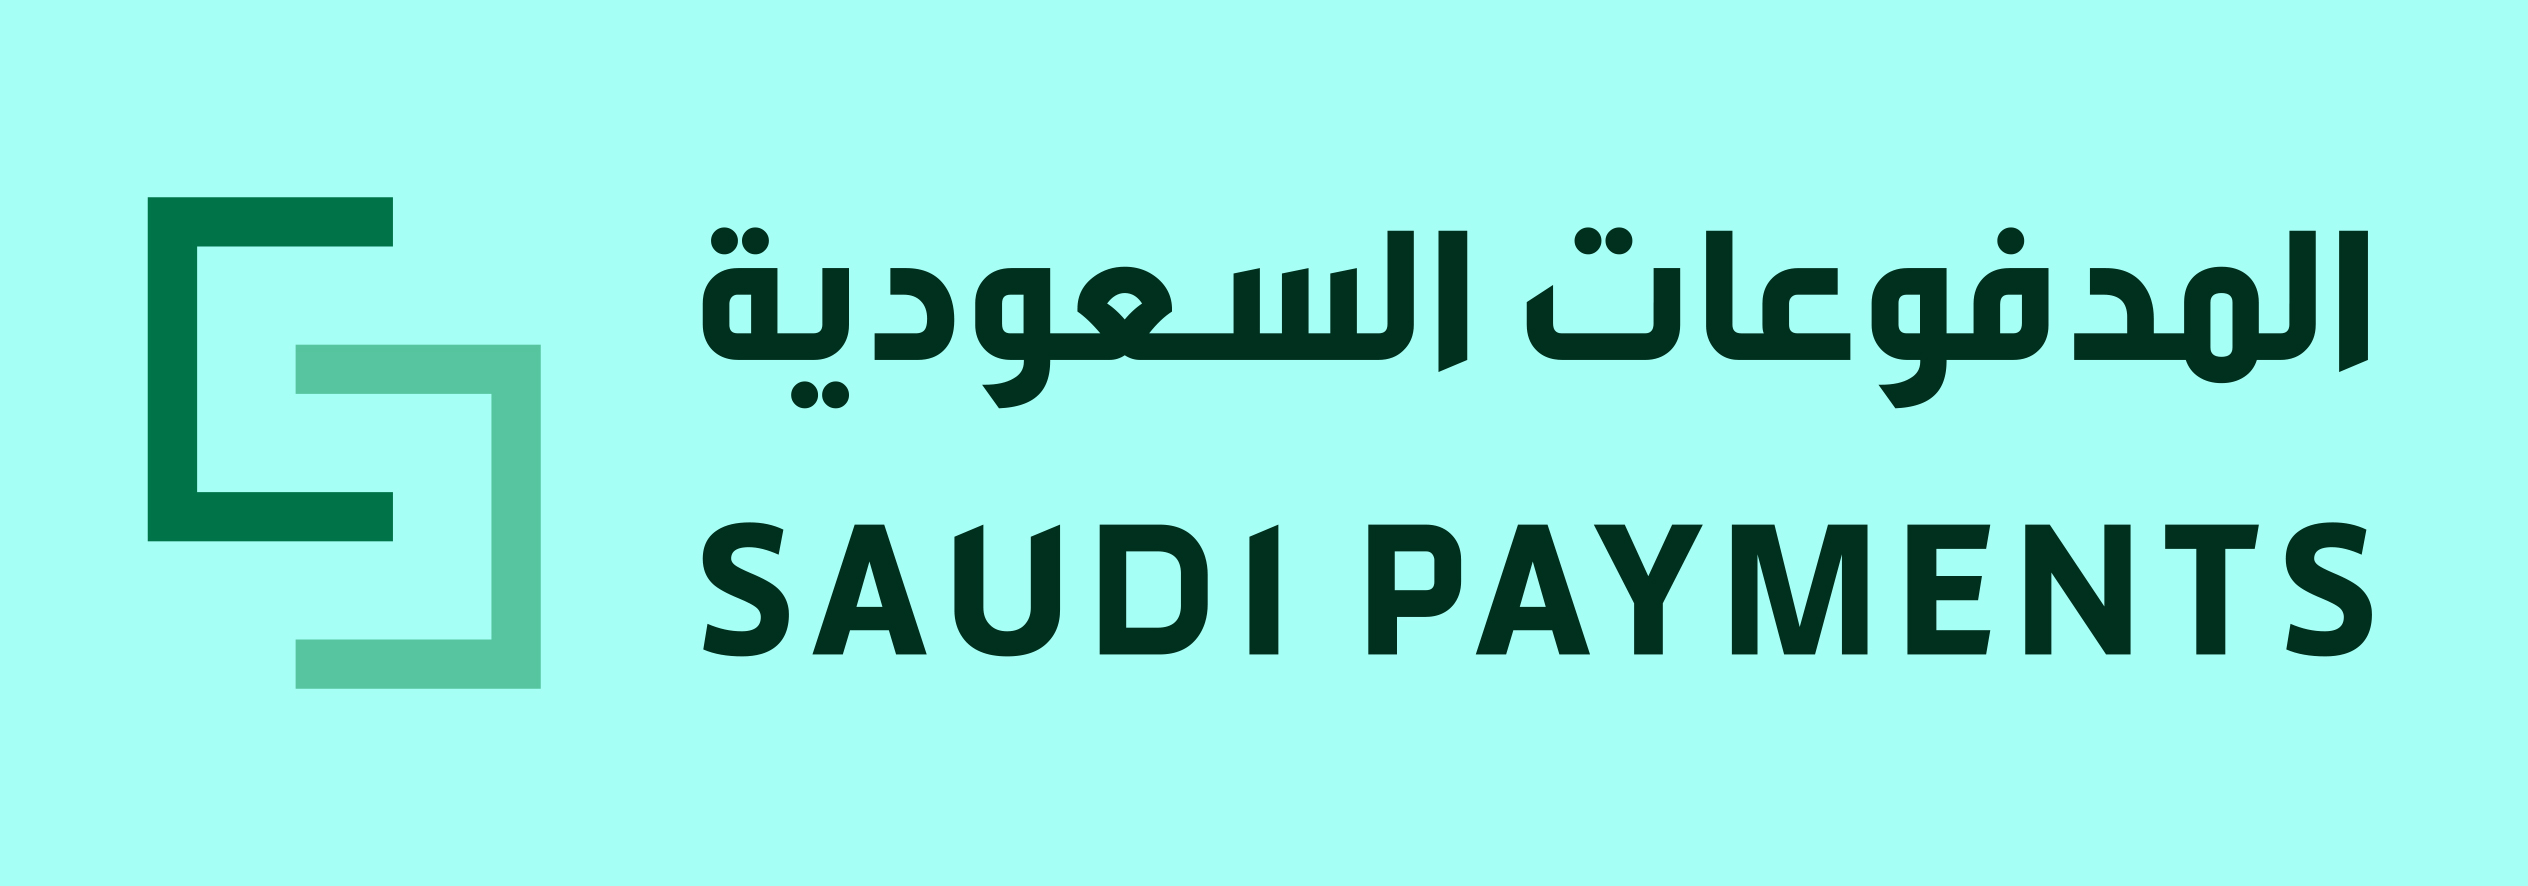 saudi payments